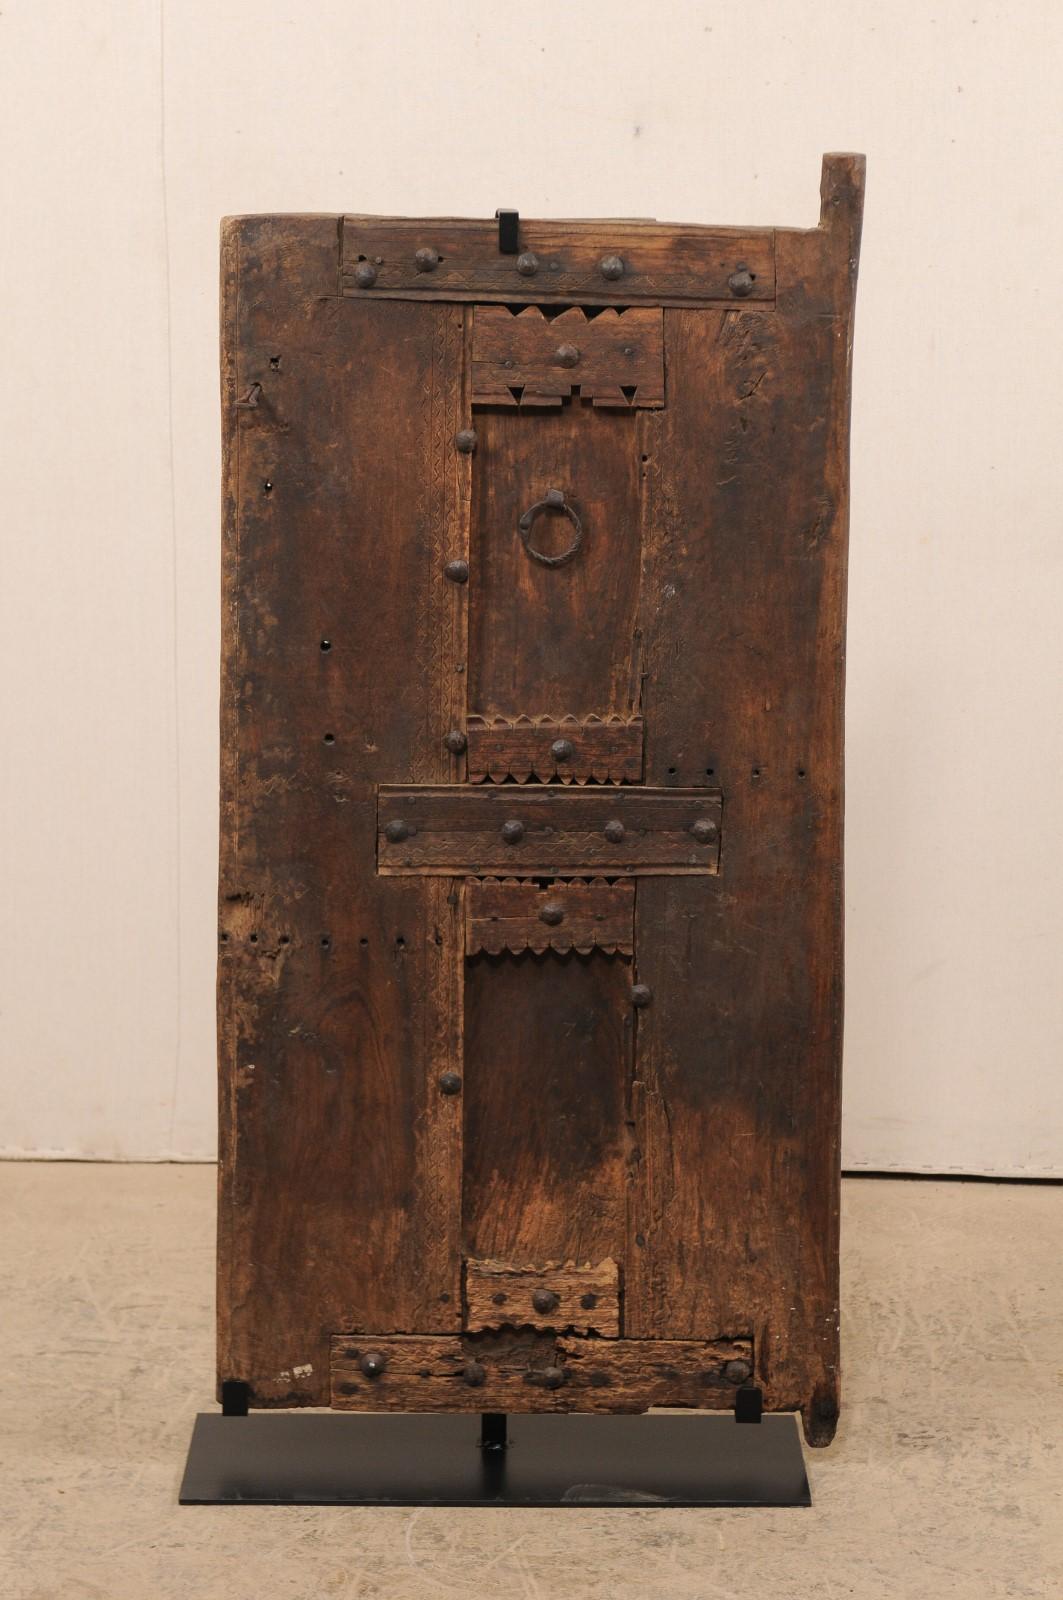 Une porte marocaine en bois sculpté de plus petite taille datant de la fin du 19e siècle sur un support personnalisé. Cette porte ancienne du Maroc a un aspect merveilleusement rustique, avec des accents et des découpes sculptés à la main qui ornent